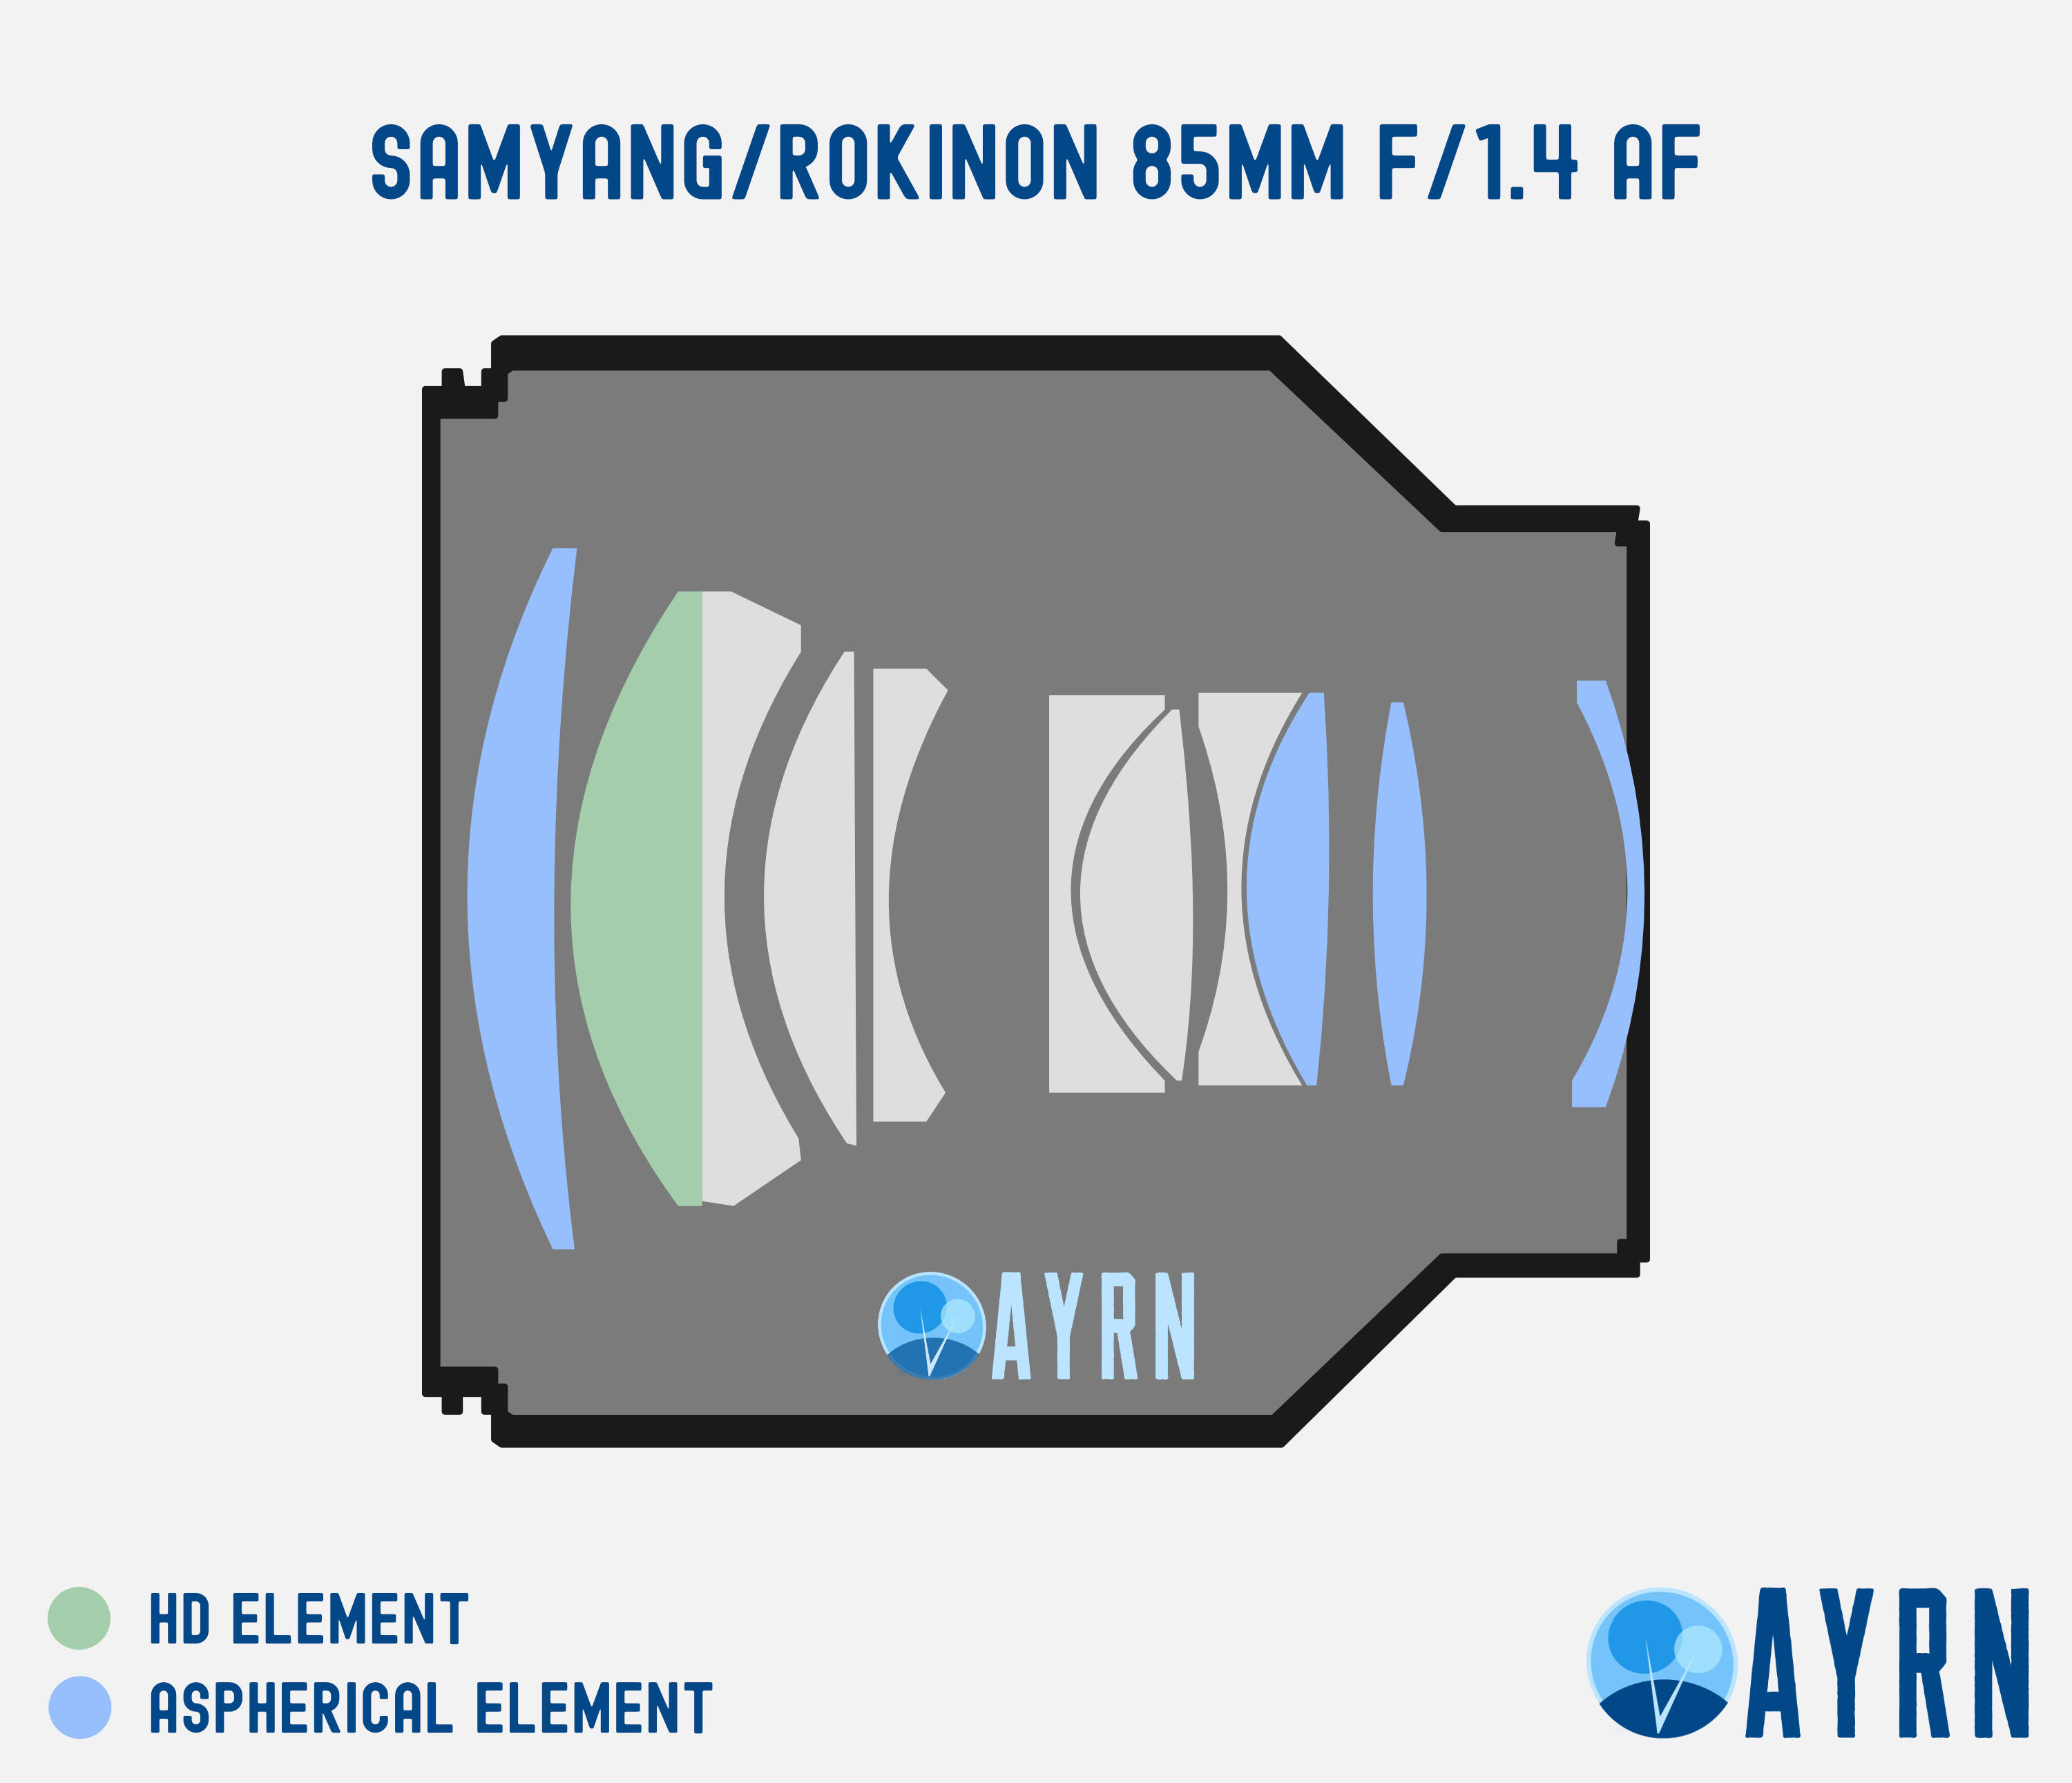 SAMYANG/ROKINON 85MM F/1.4 AF FE LENS DESIGN / OPTICAL CONSTRUCTION